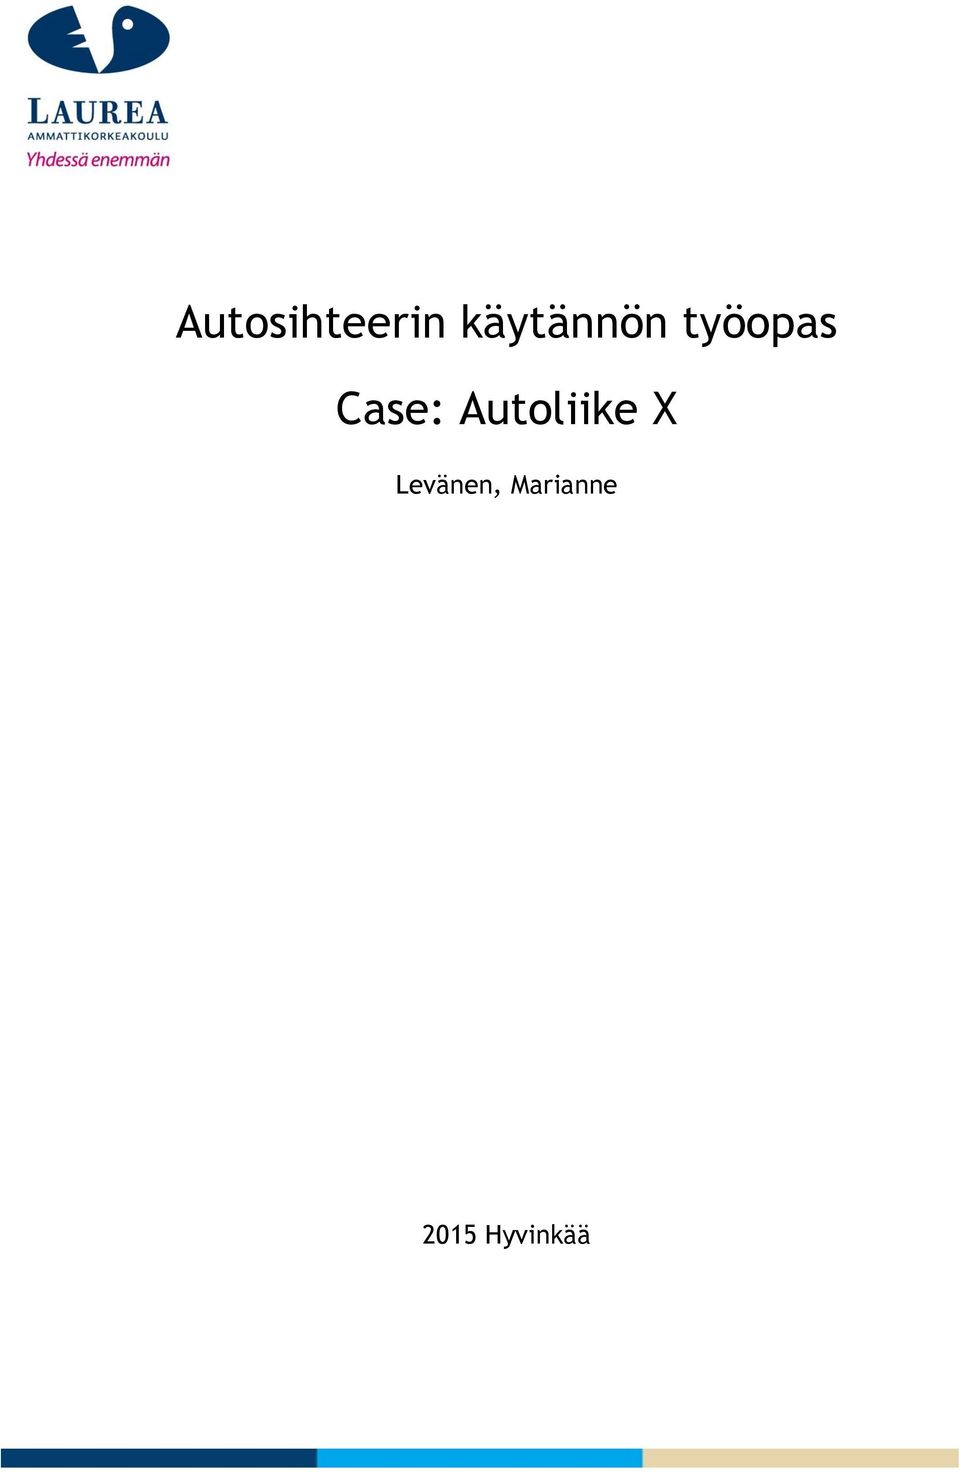 Case: Autoliike X